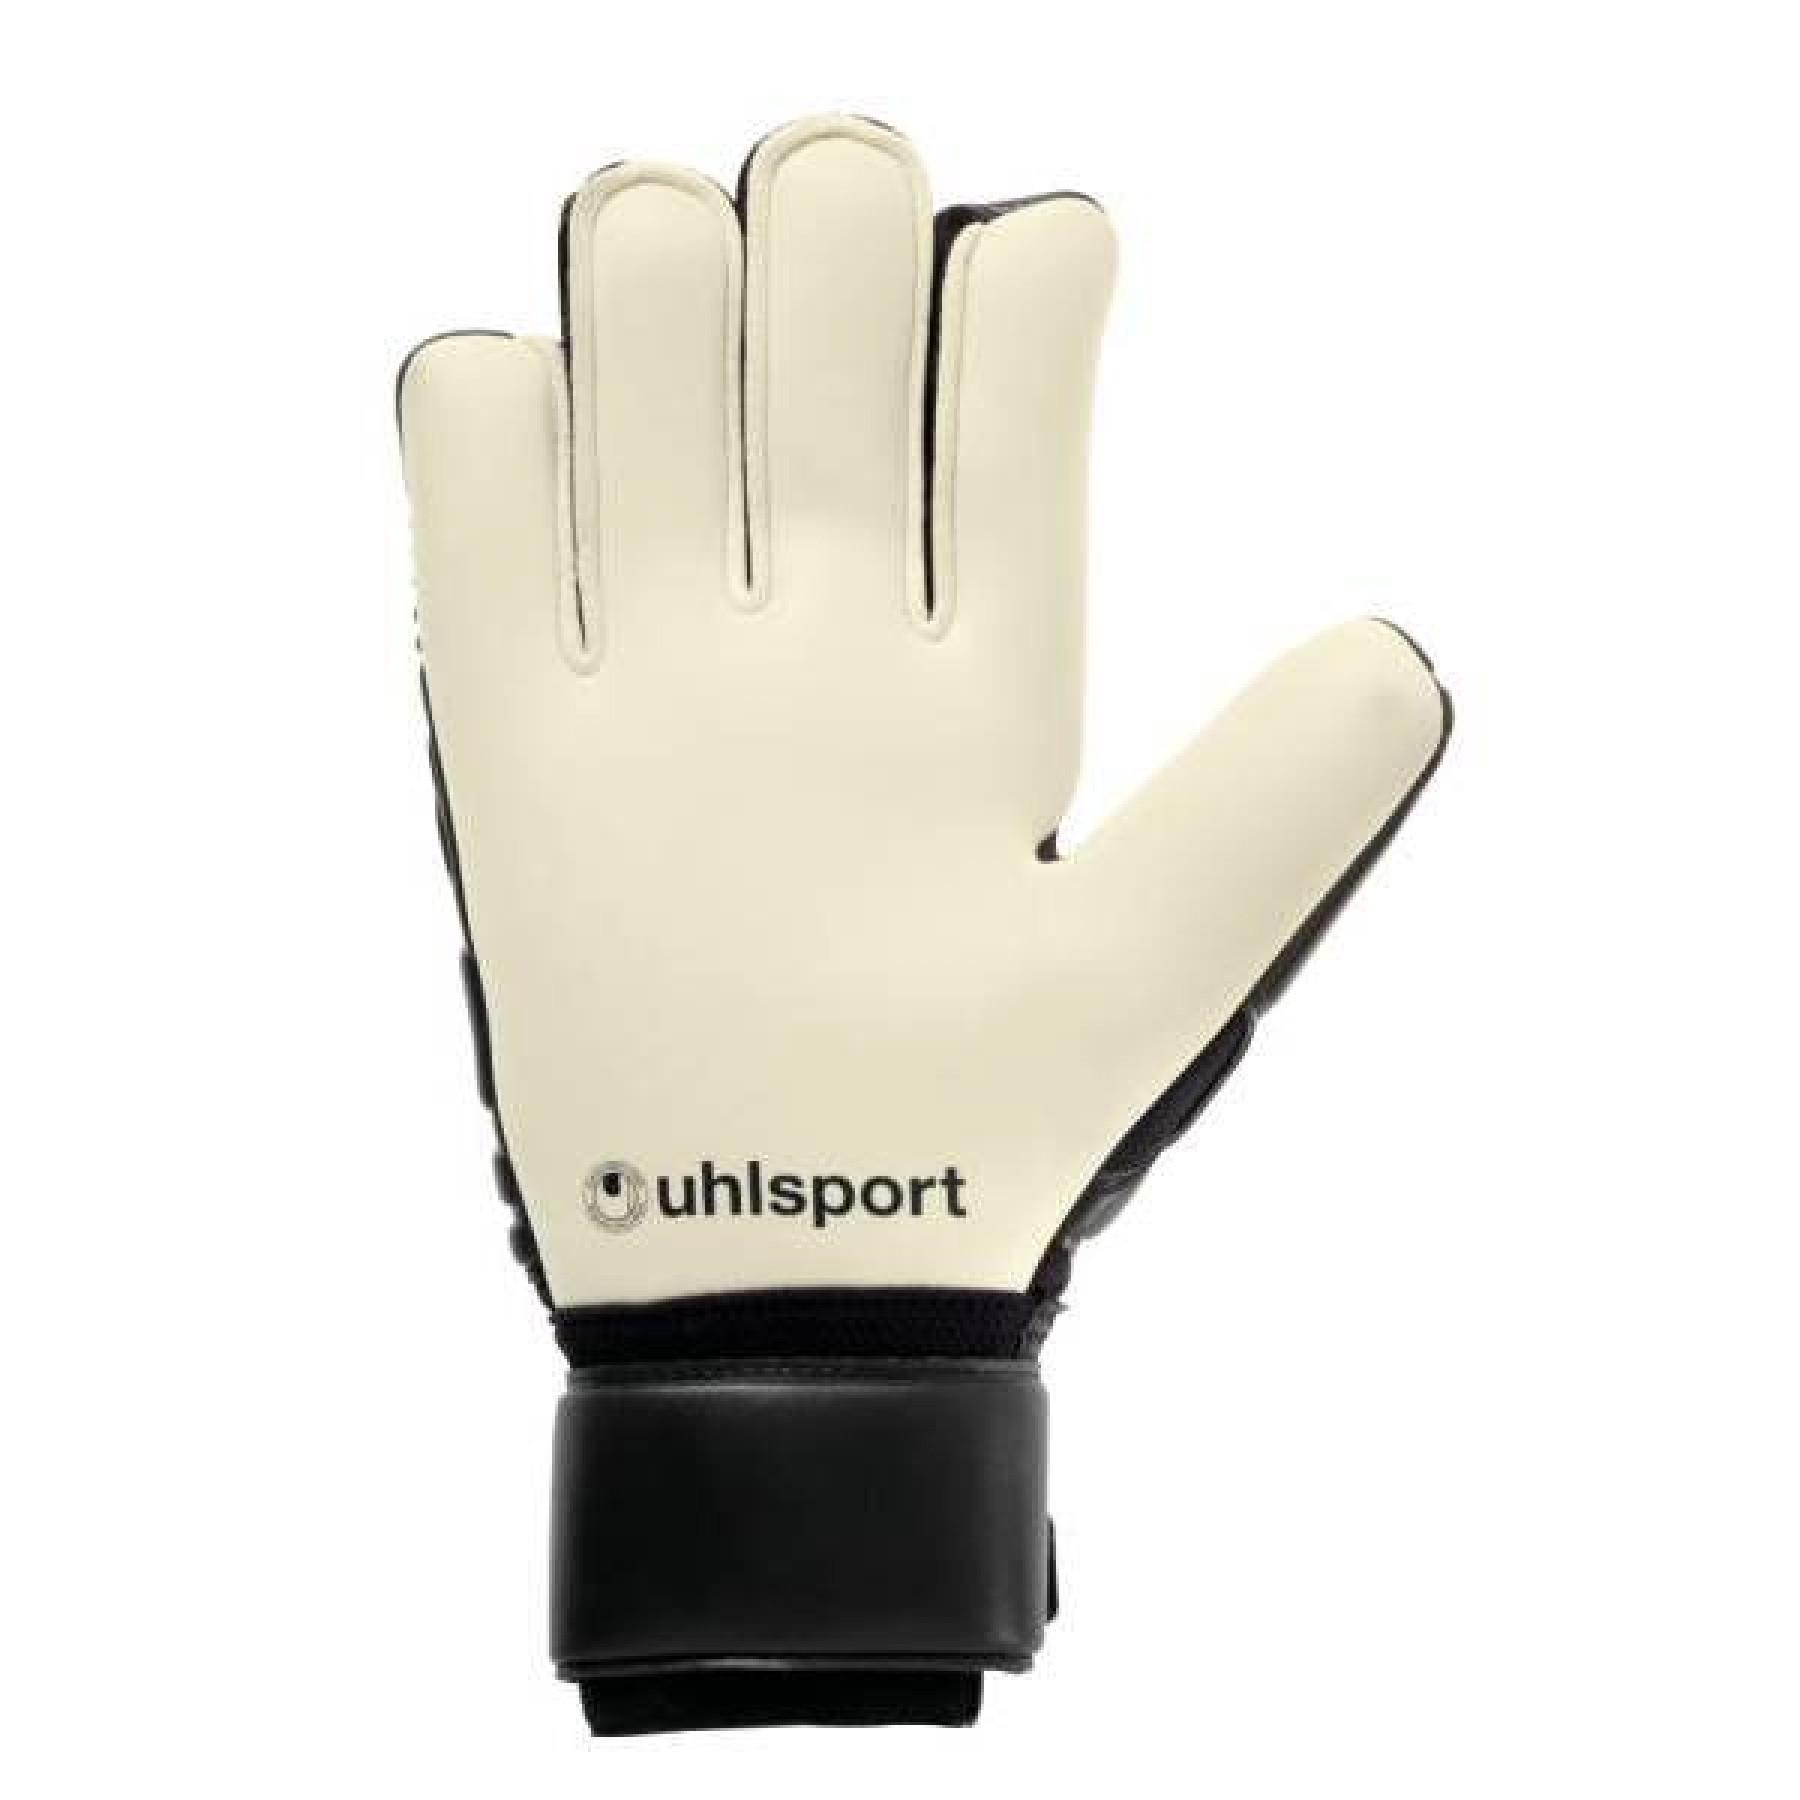 Goalkeeper gloves Uhlsport Comfort Absolutgrip